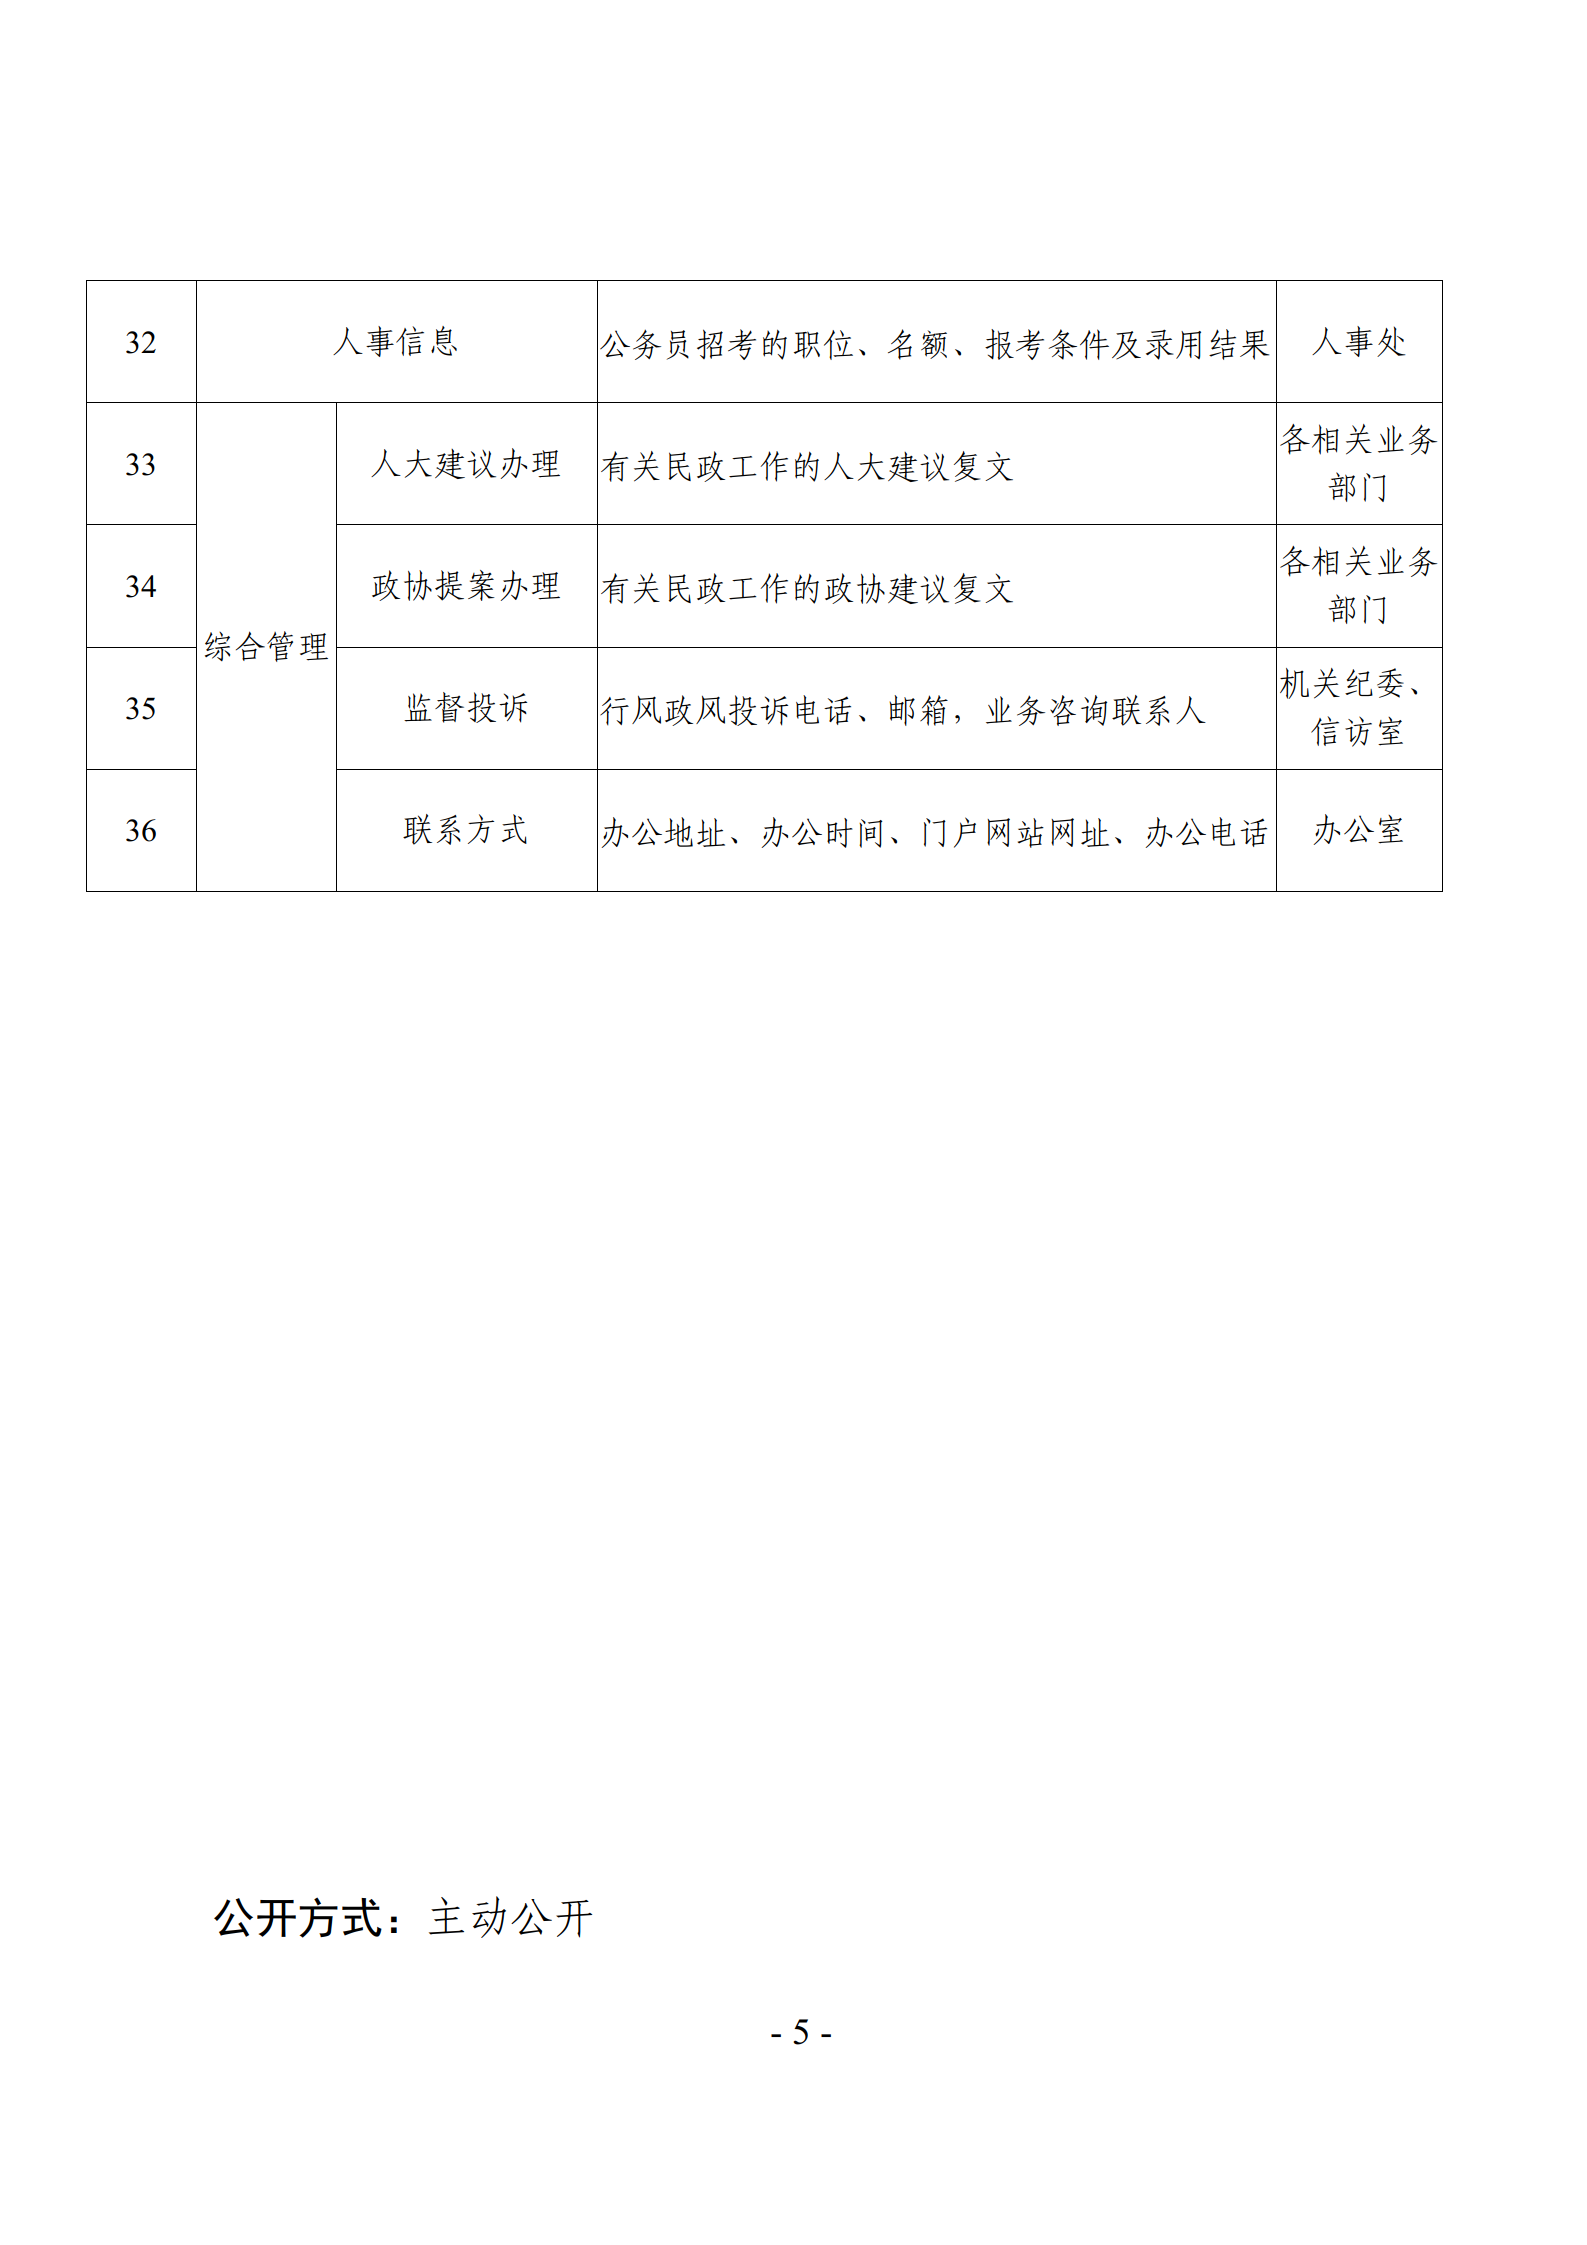 关于发布《广东省民政厅主动公开基本目录》的公告_08.png